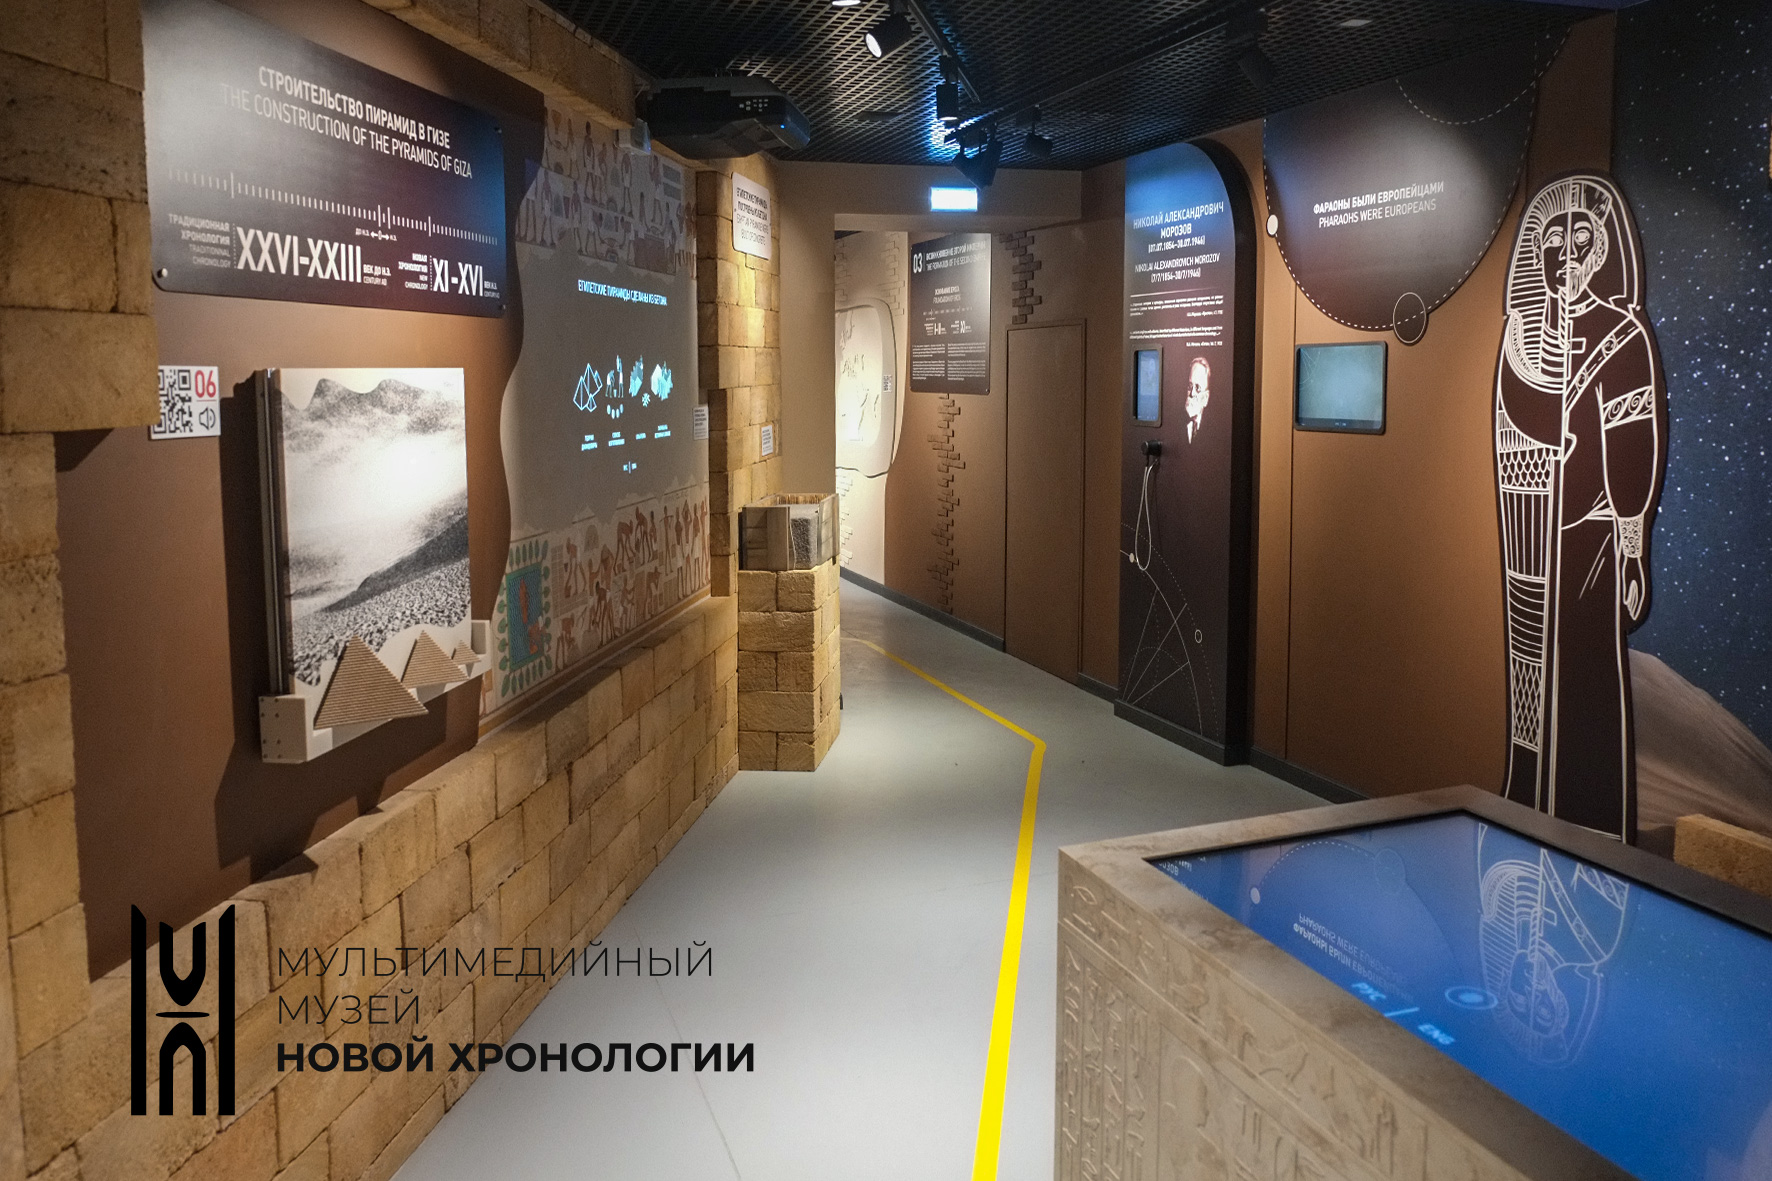 Мультимедийный музей Новой хронологии в Ярославле